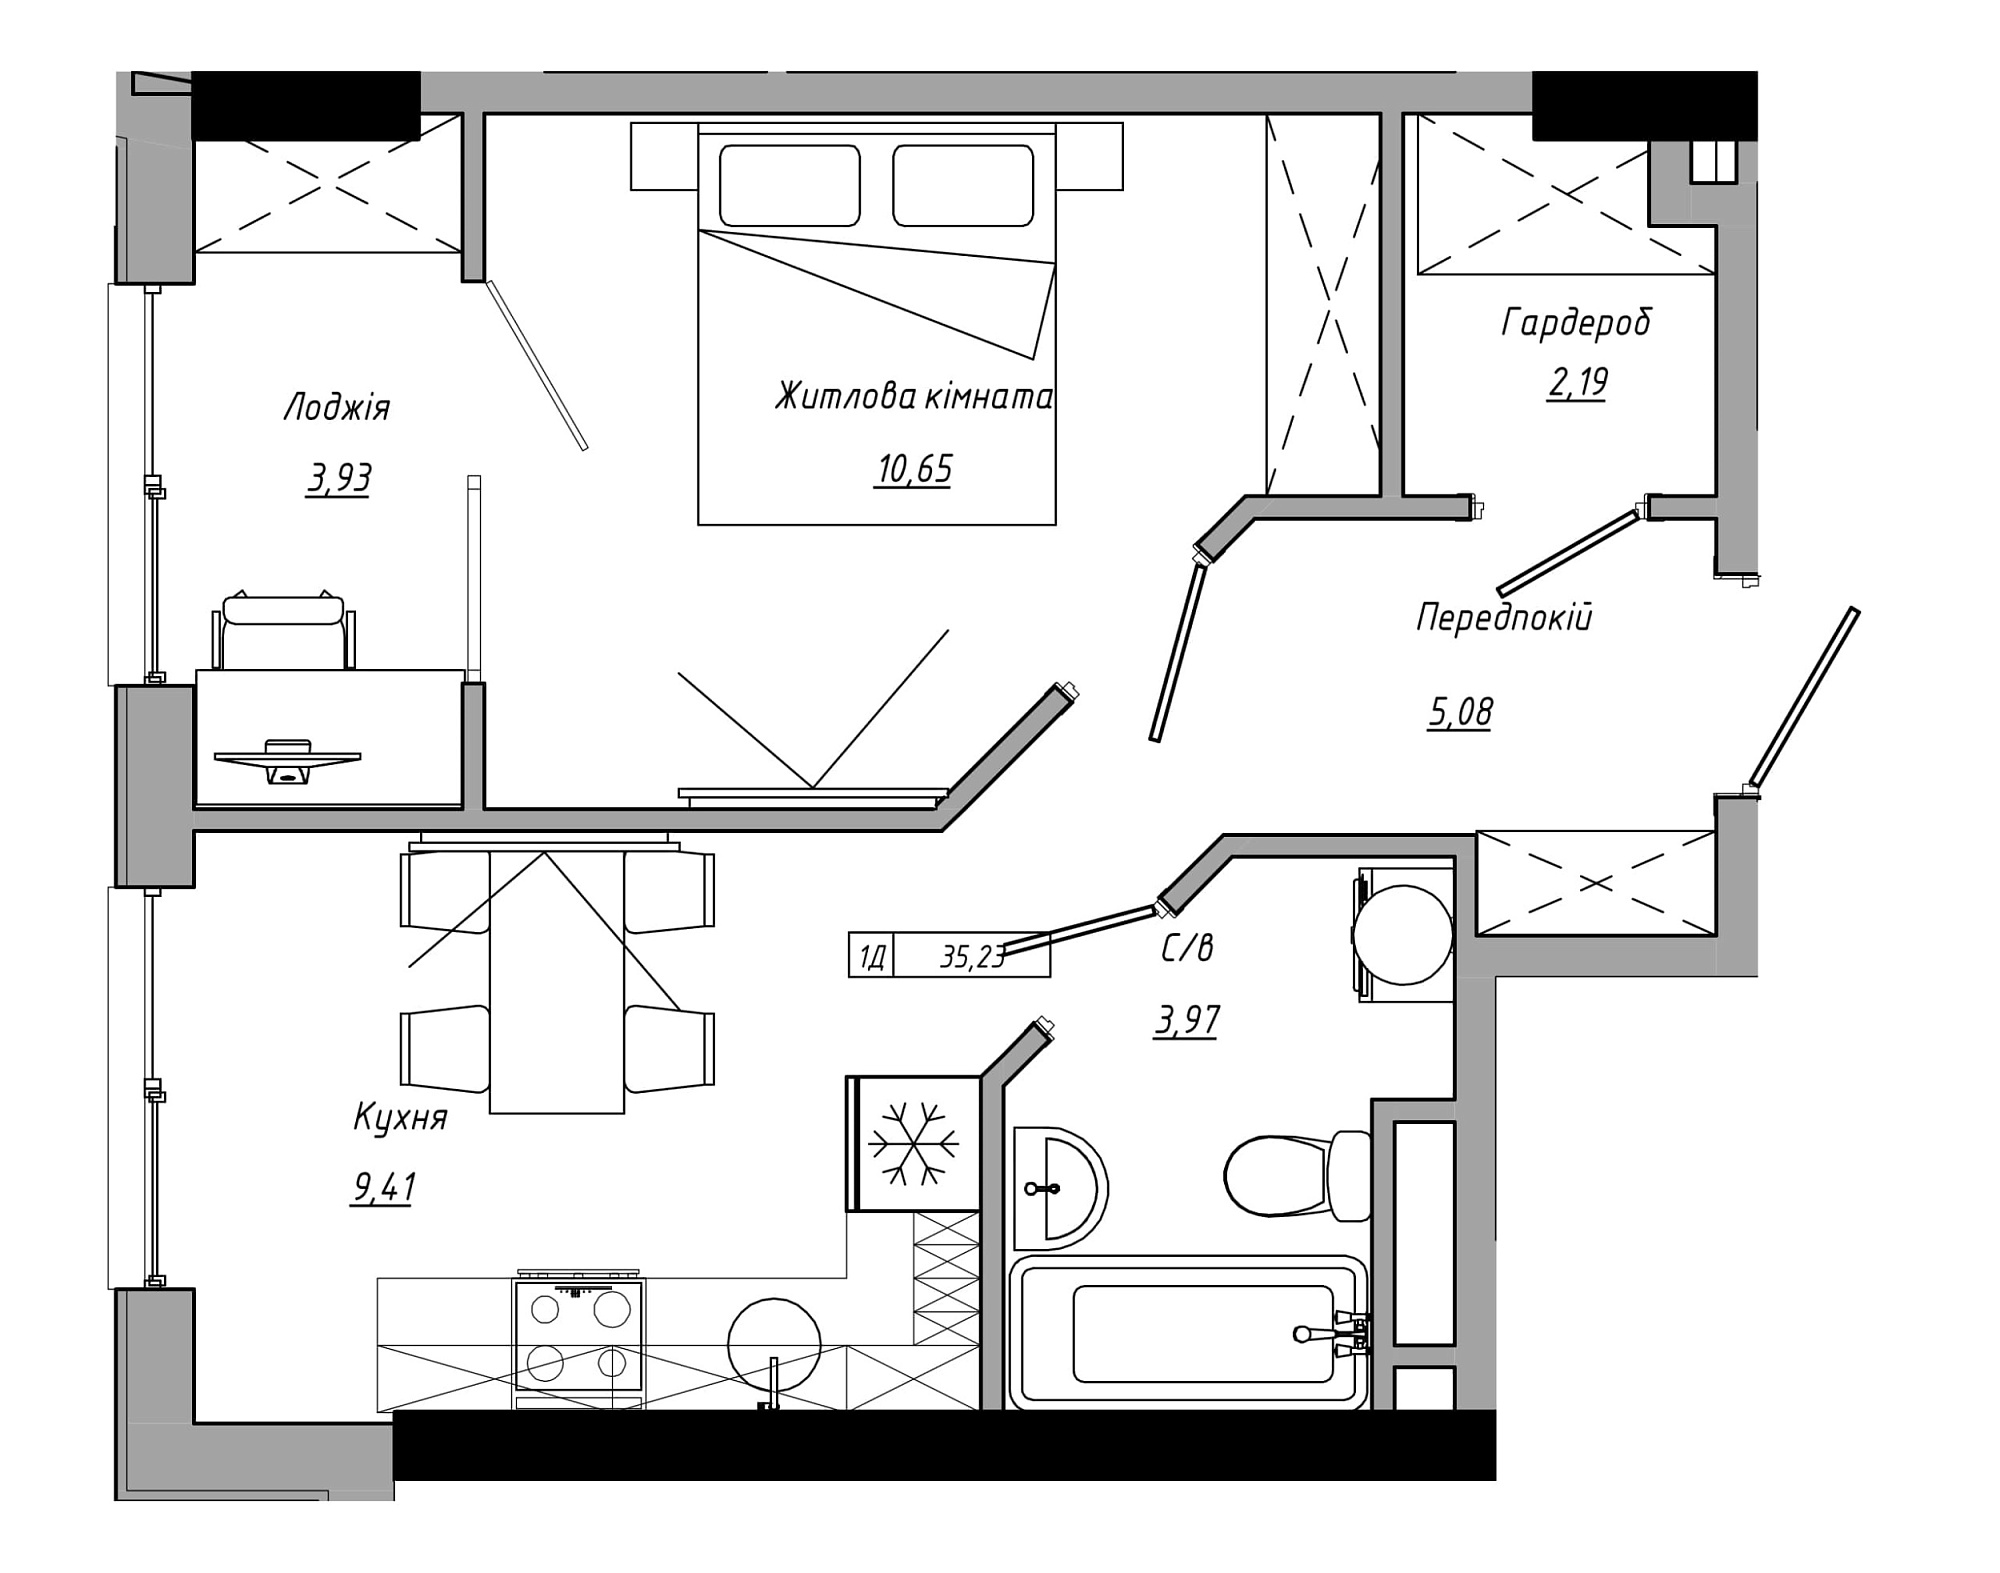 Планировка 1-к квартира площей 35.23м2, AB-21-05/00006.